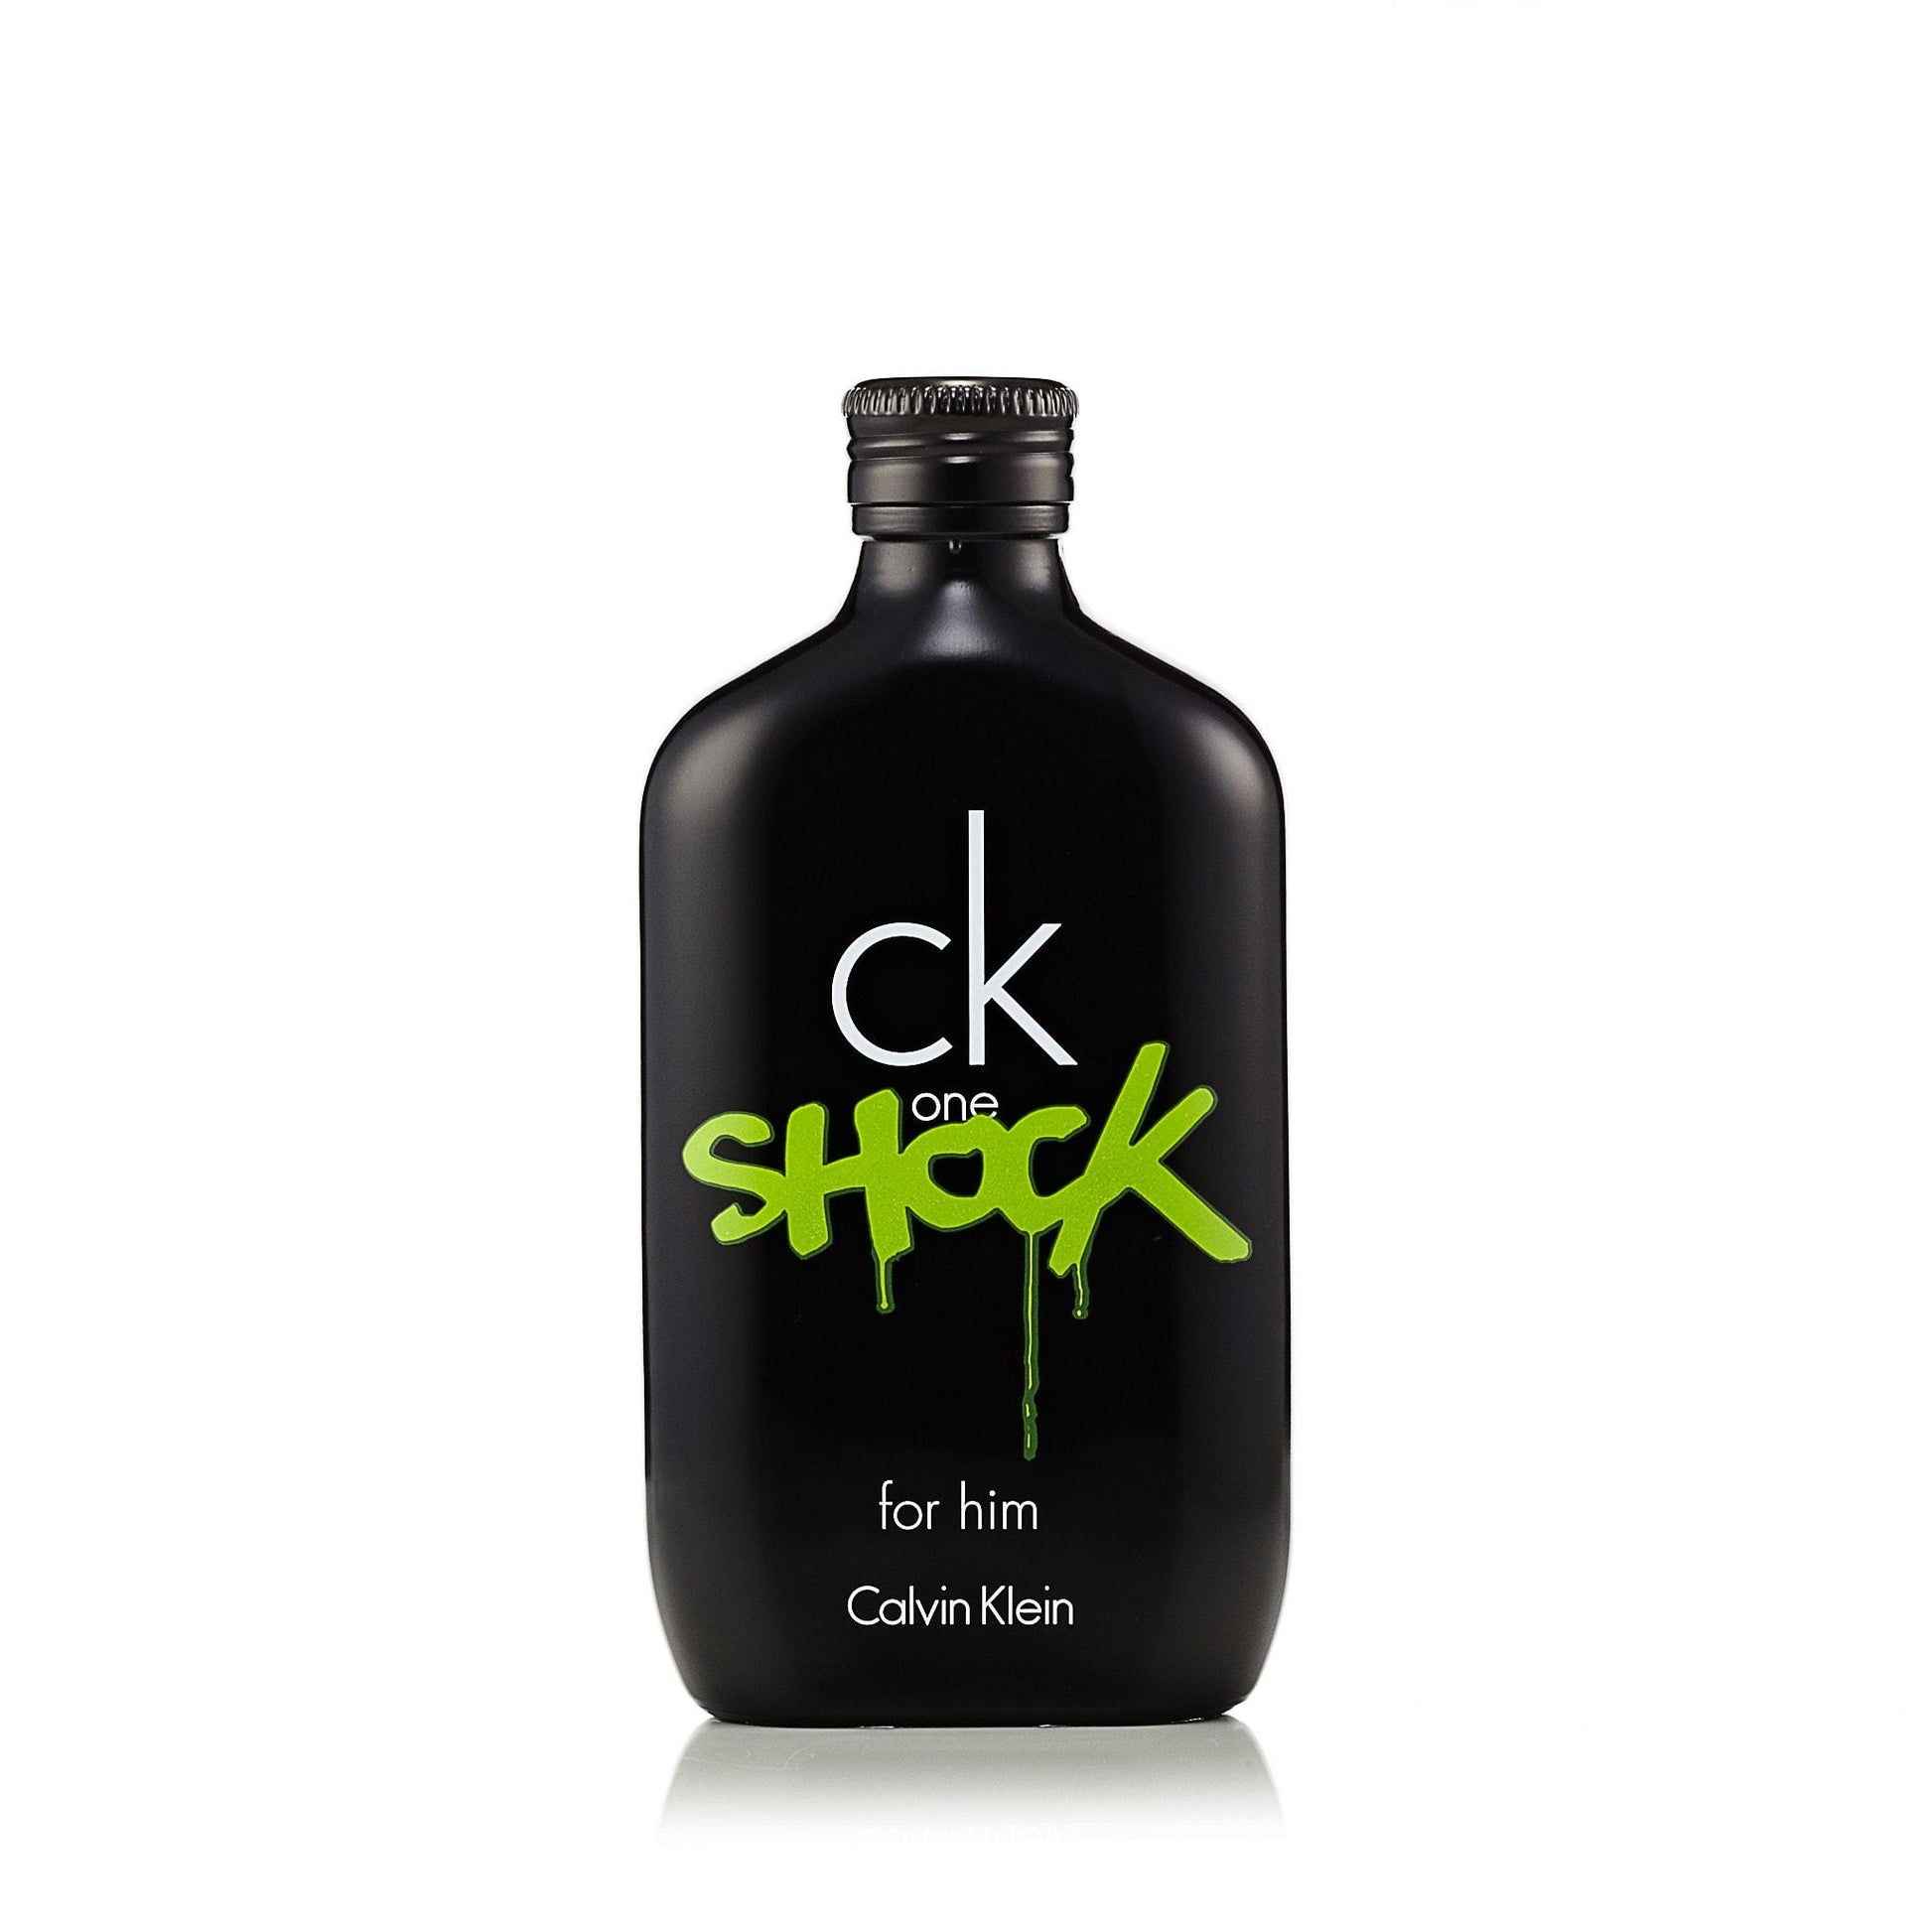 CK One Shock Eau de Toilette Spray for Men by Calvin Klein, Product image 2